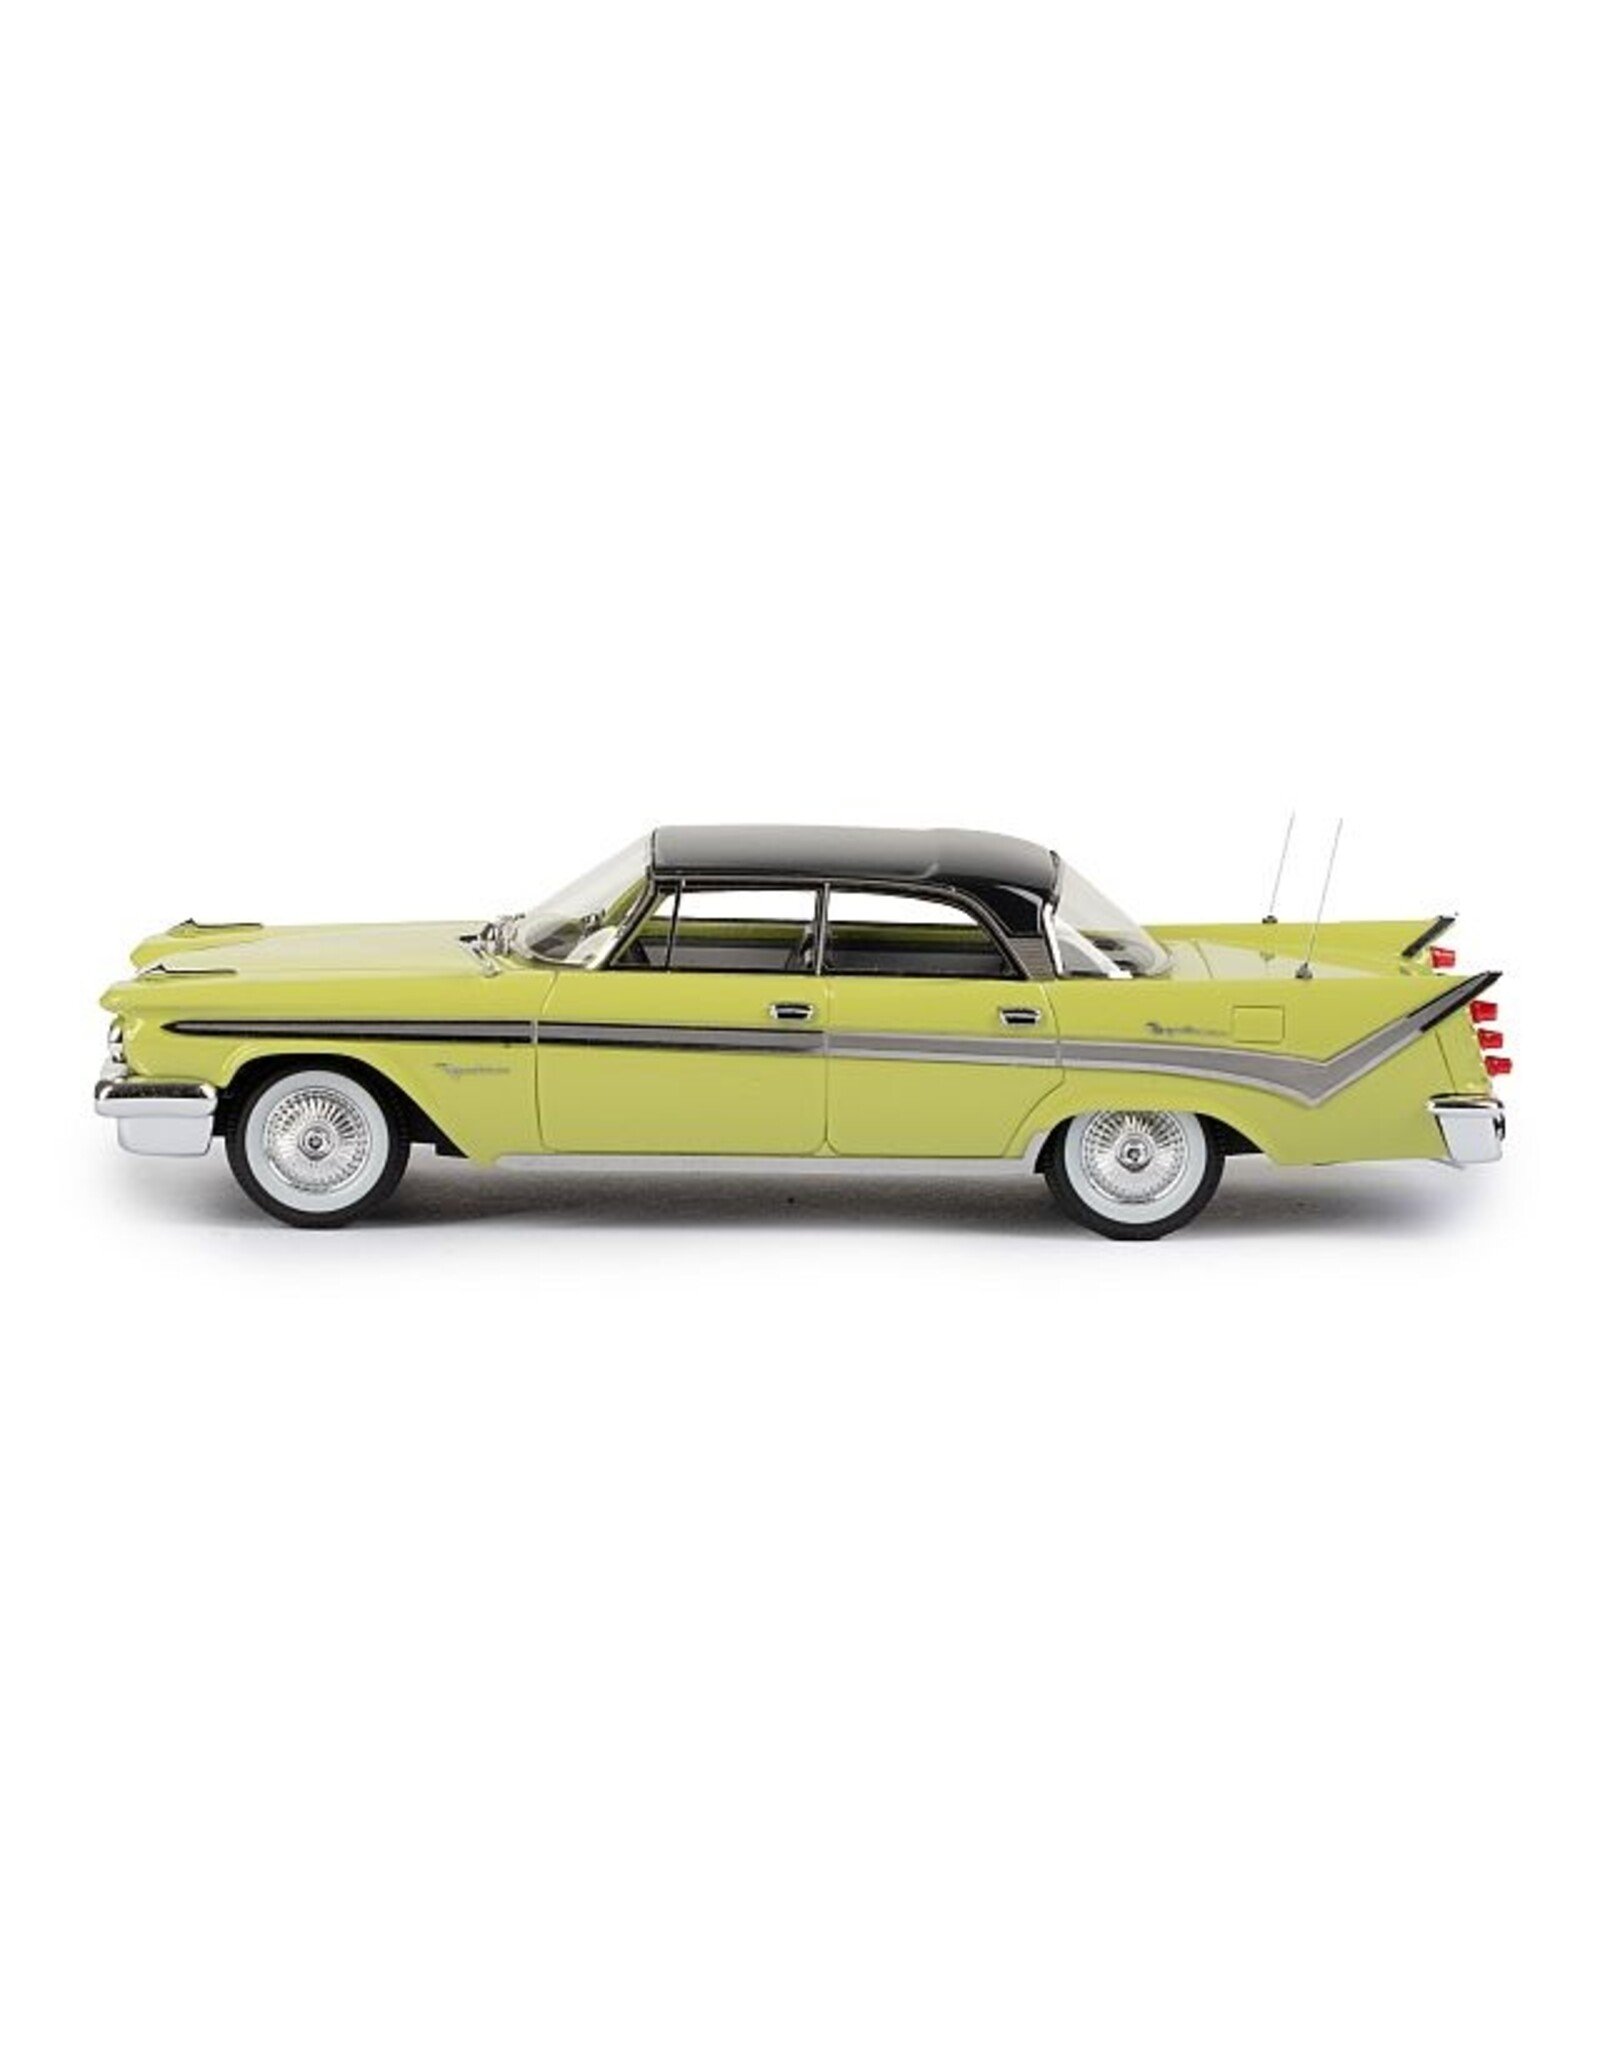 Art-Toys - Desoto Fireflite 4-door hardtop(1959)yellow/black